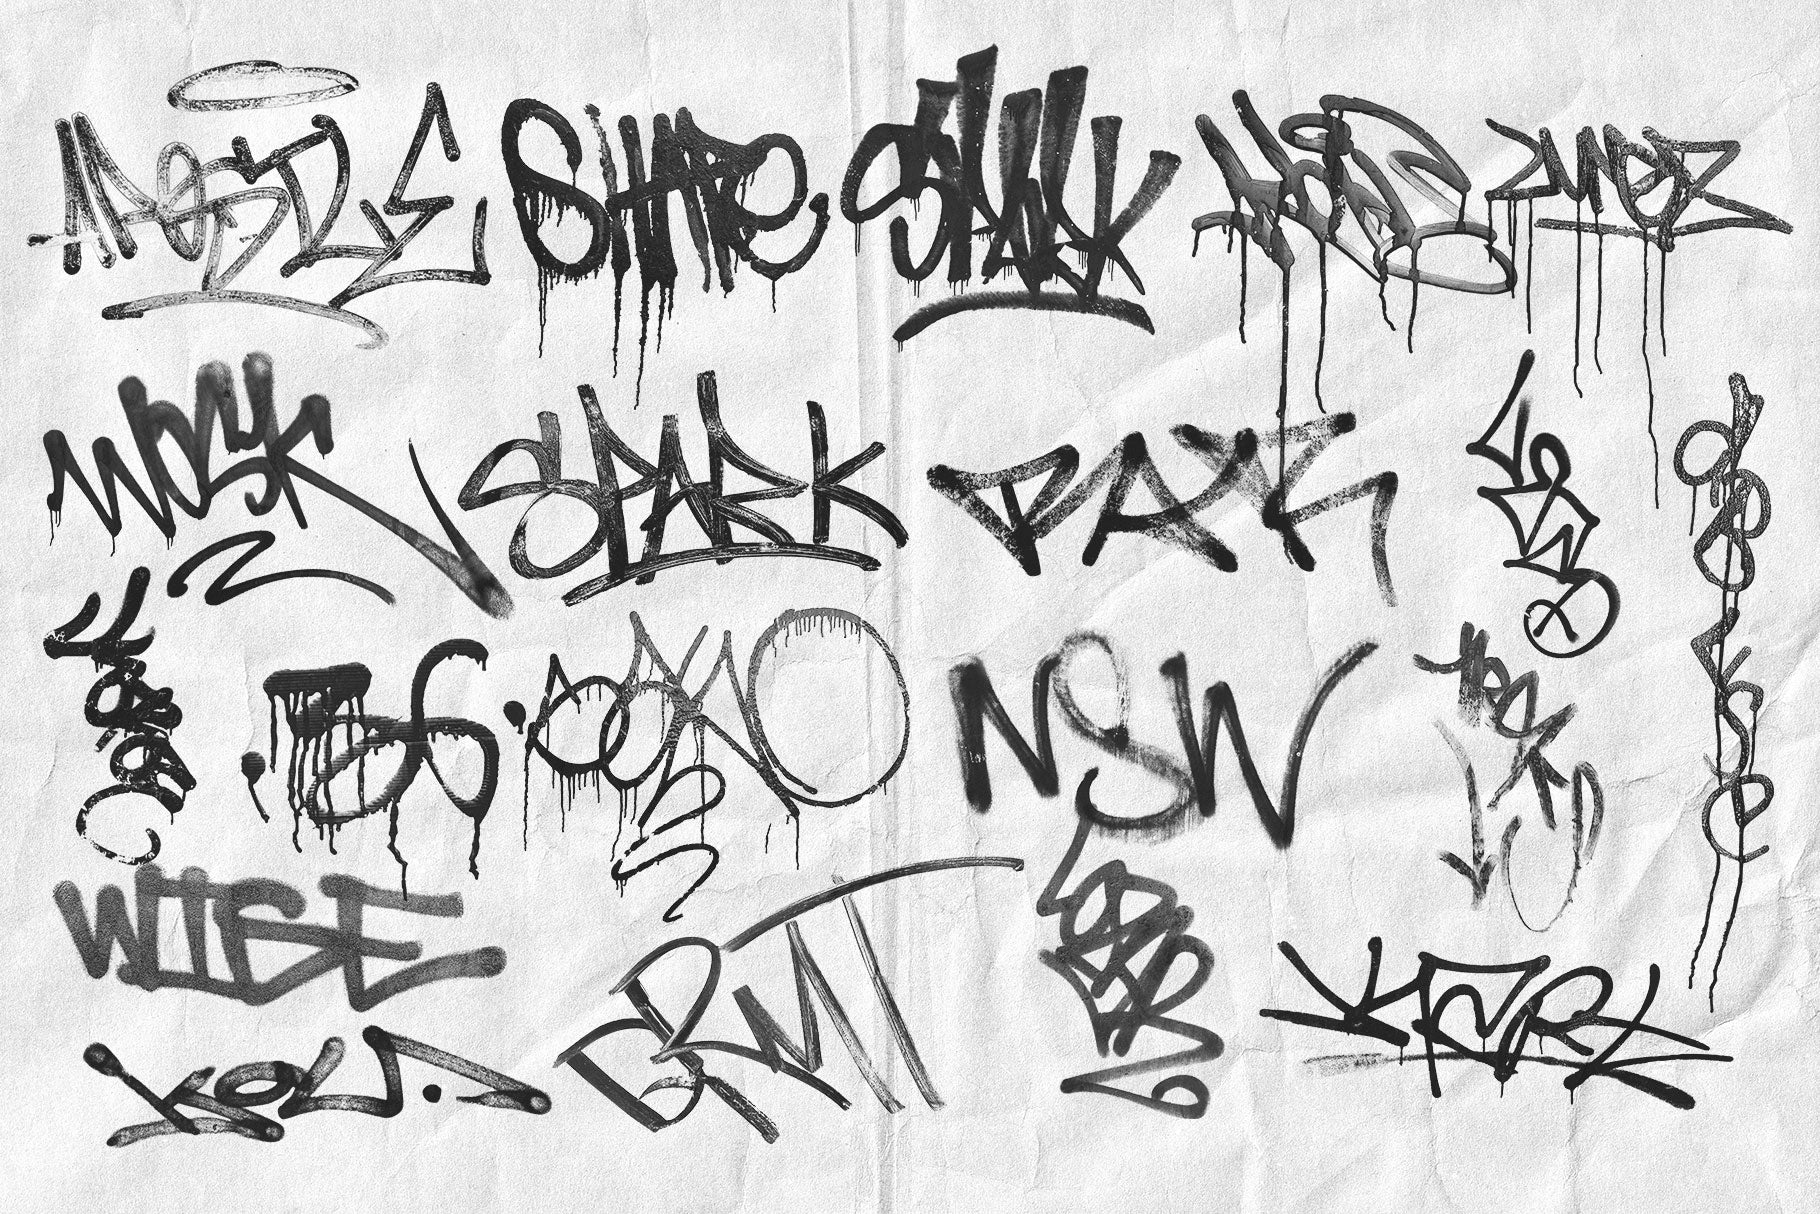 maria name in graffiti